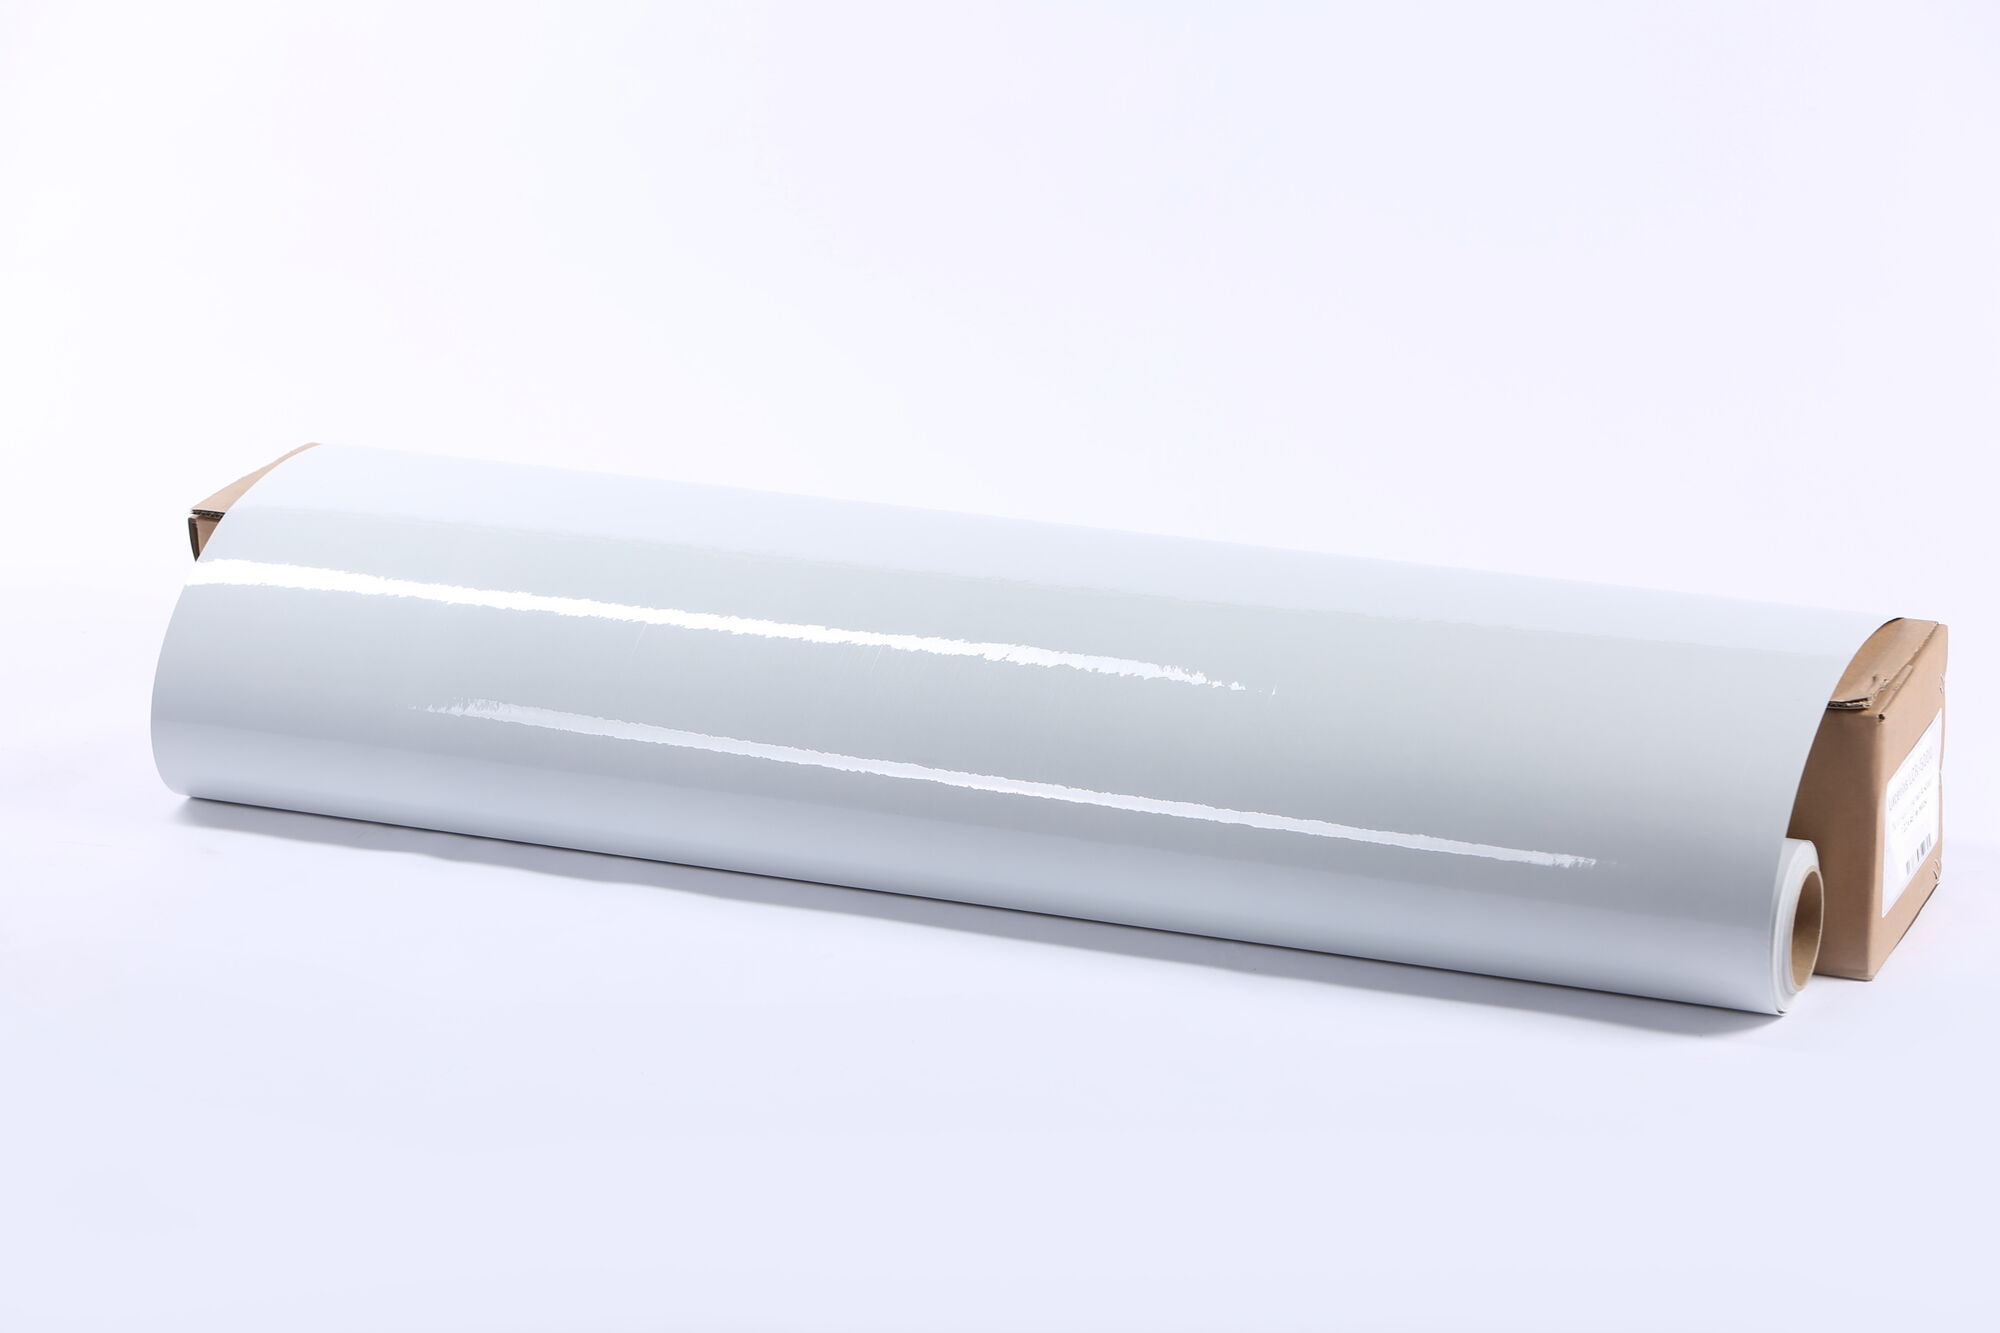 Световозвращающая пленка Lucentis LCR-5000 печатная белая, тип А, класс I 0,46*45,7м (с маркировкой)